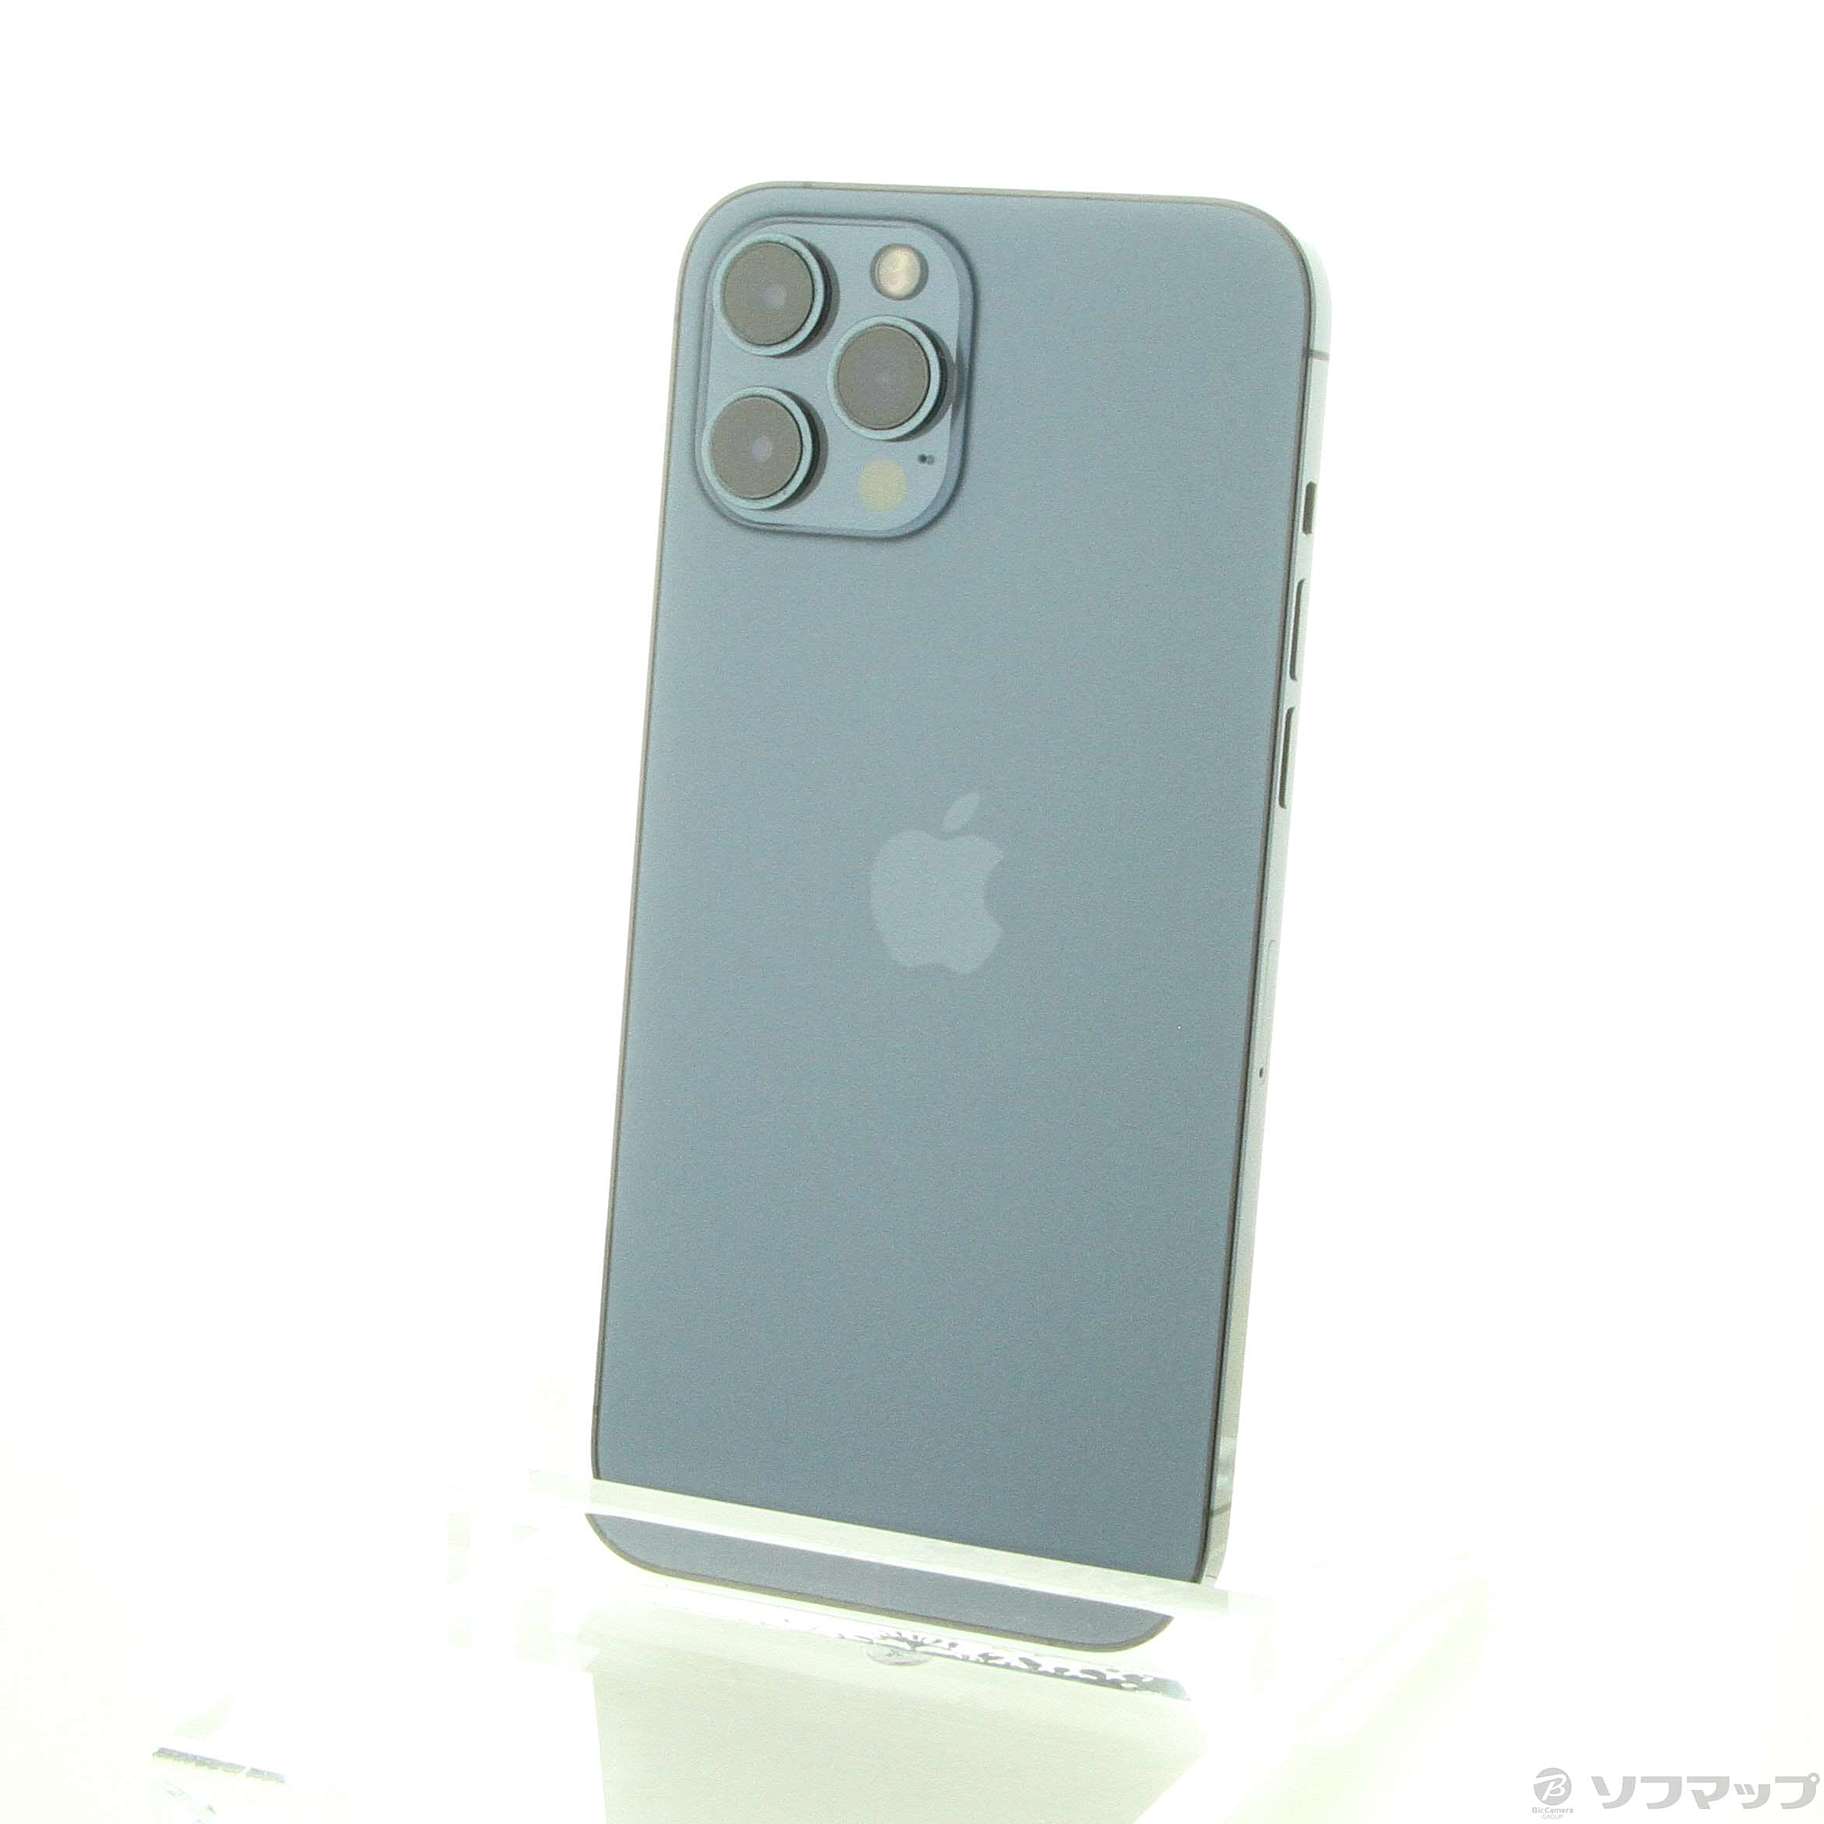 中古】セール対象品 iPhone12 Pro Max 256GB パシフィックブルー ...